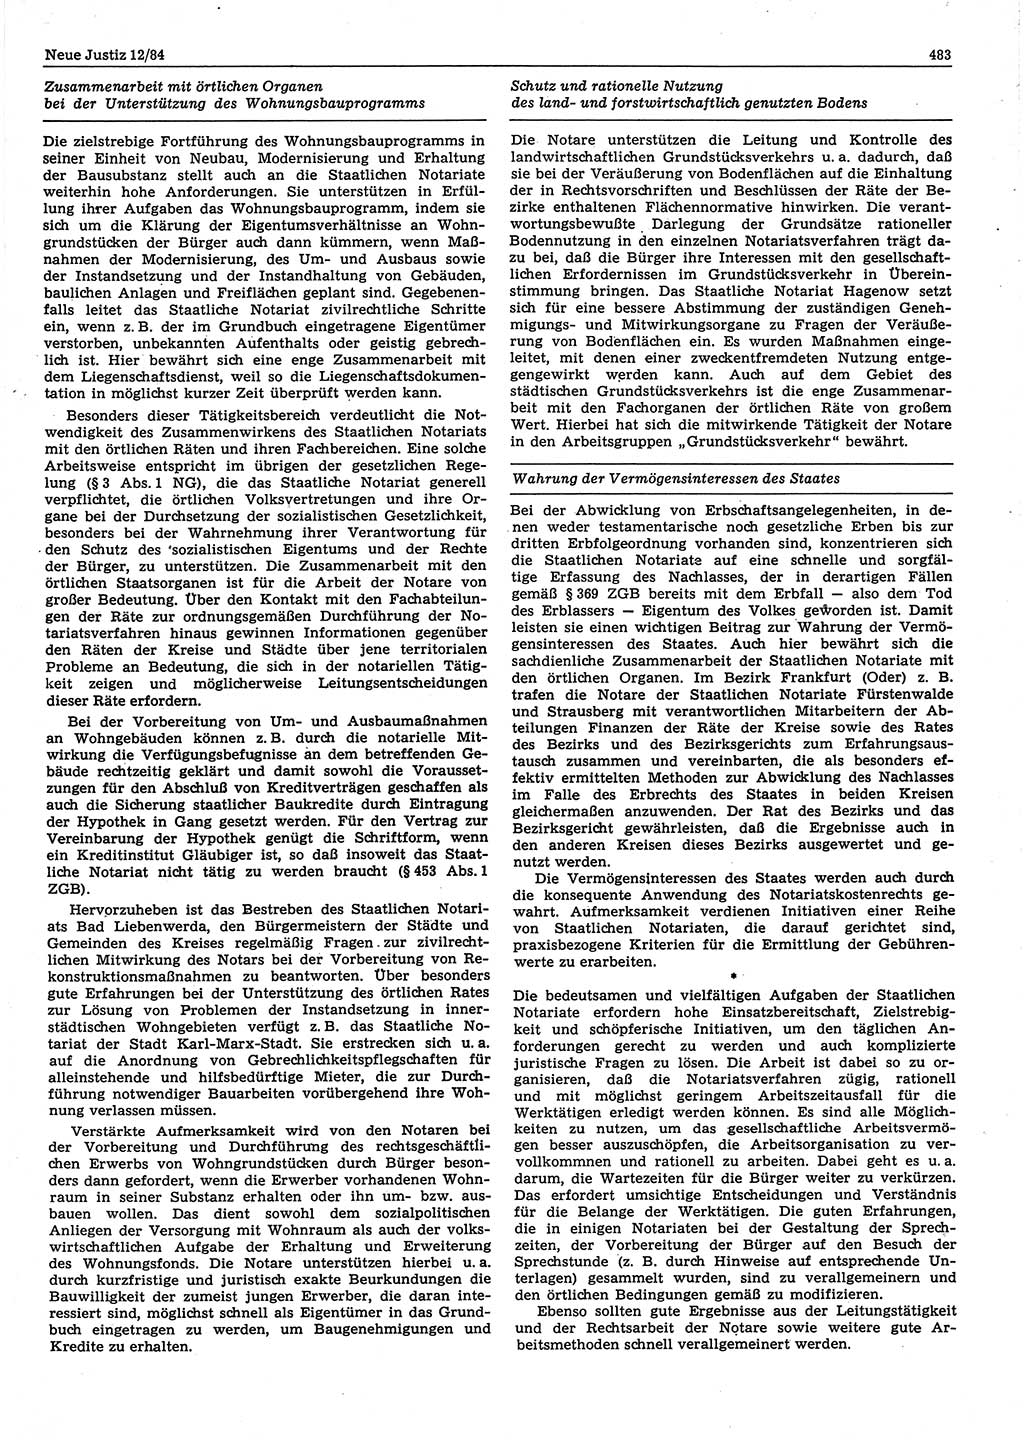 Neue Justiz (NJ), Zeitschrift für sozialistisches Recht und Gesetzlichkeit [Deutsche Demokratische Republik (DDR)], 38. Jahrgang 1984, Seite 483 (NJ DDR 1984, S. 483)